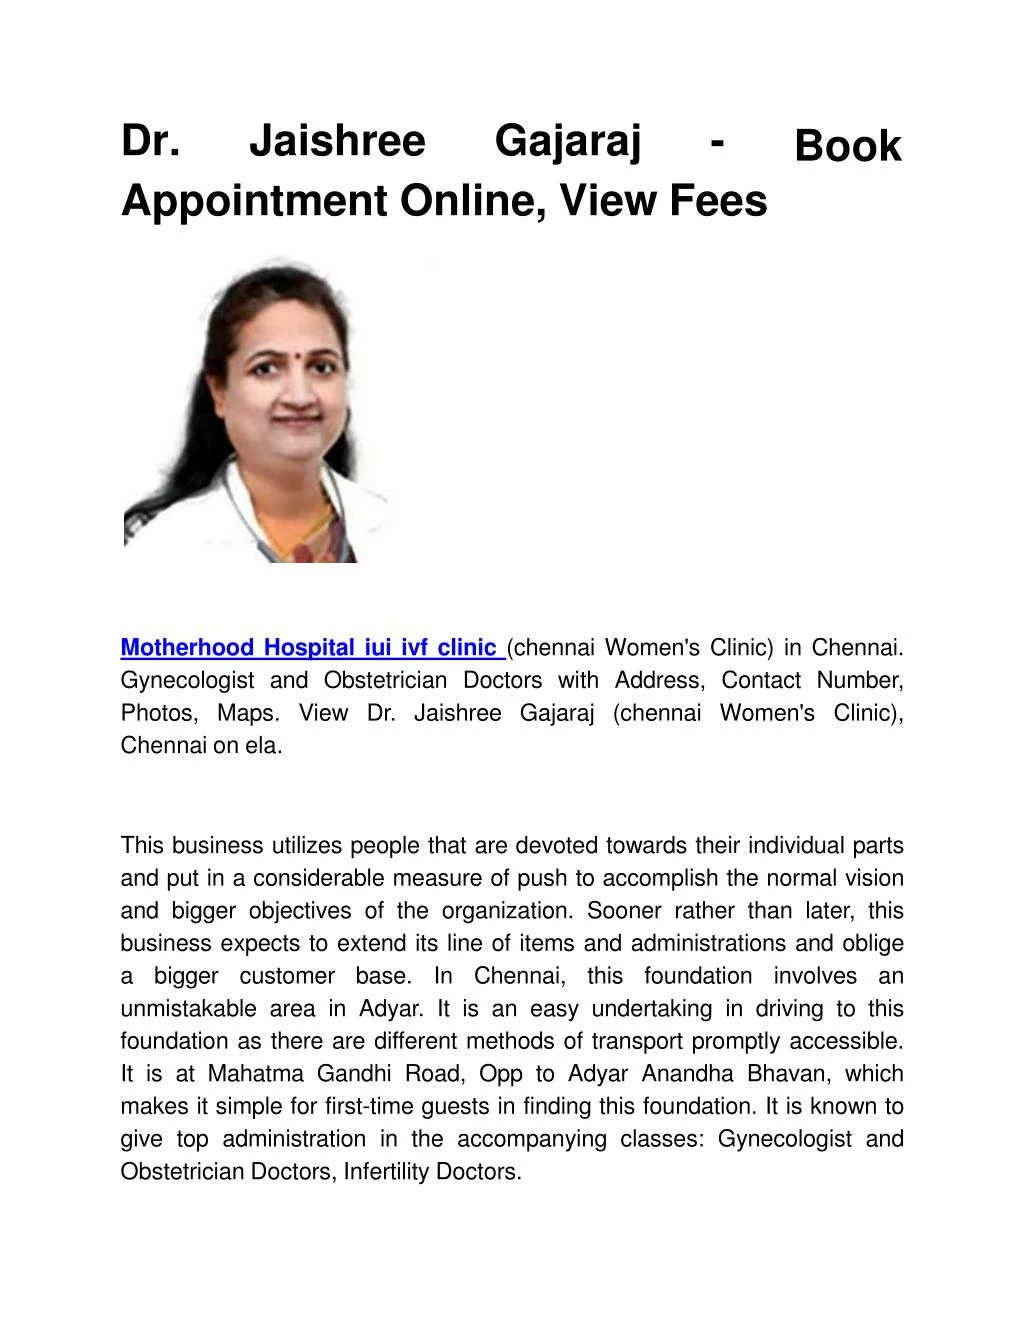 dr jaishree gajaraj appointment online view fees